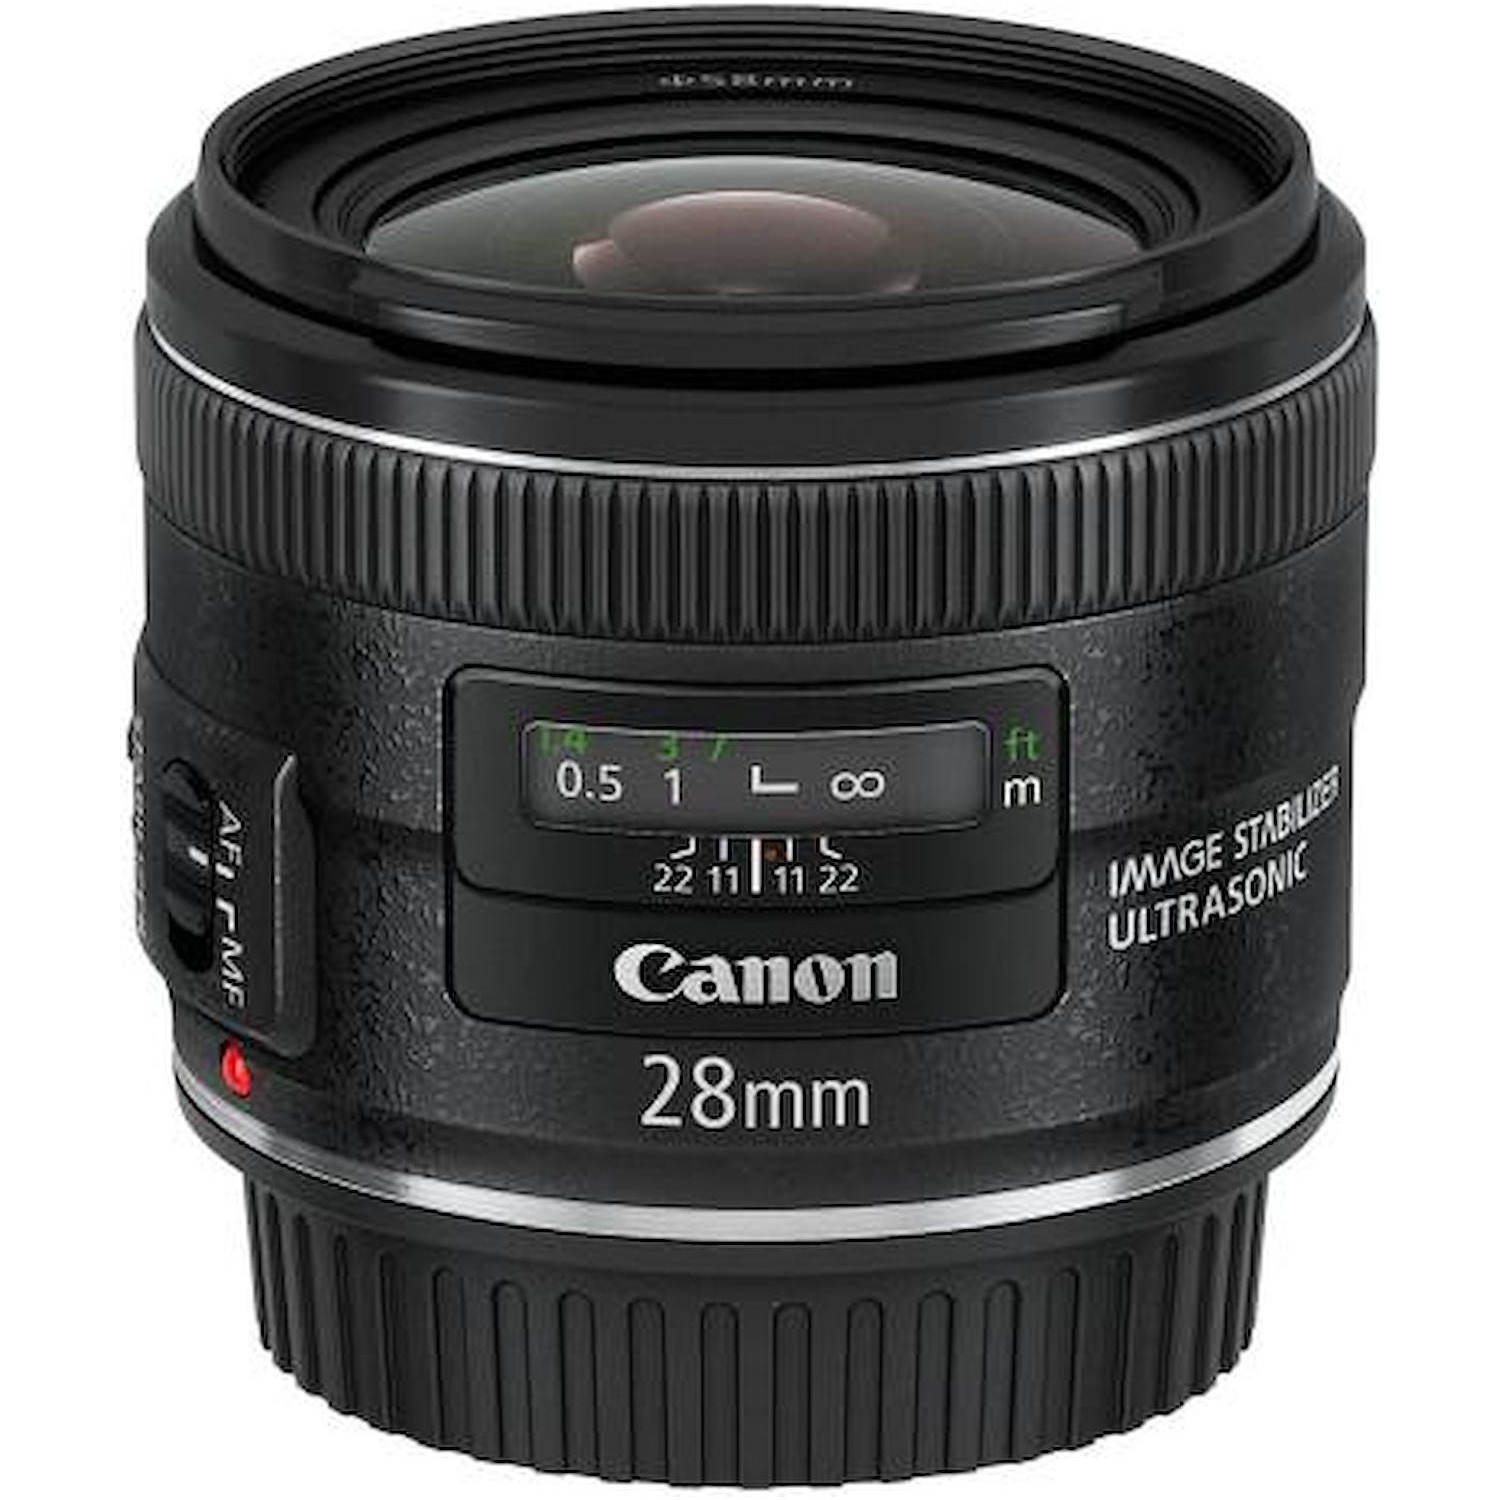 Immagine per Obiettivo Canon EF 28mm F/2.8 IS USM da DIMOStore